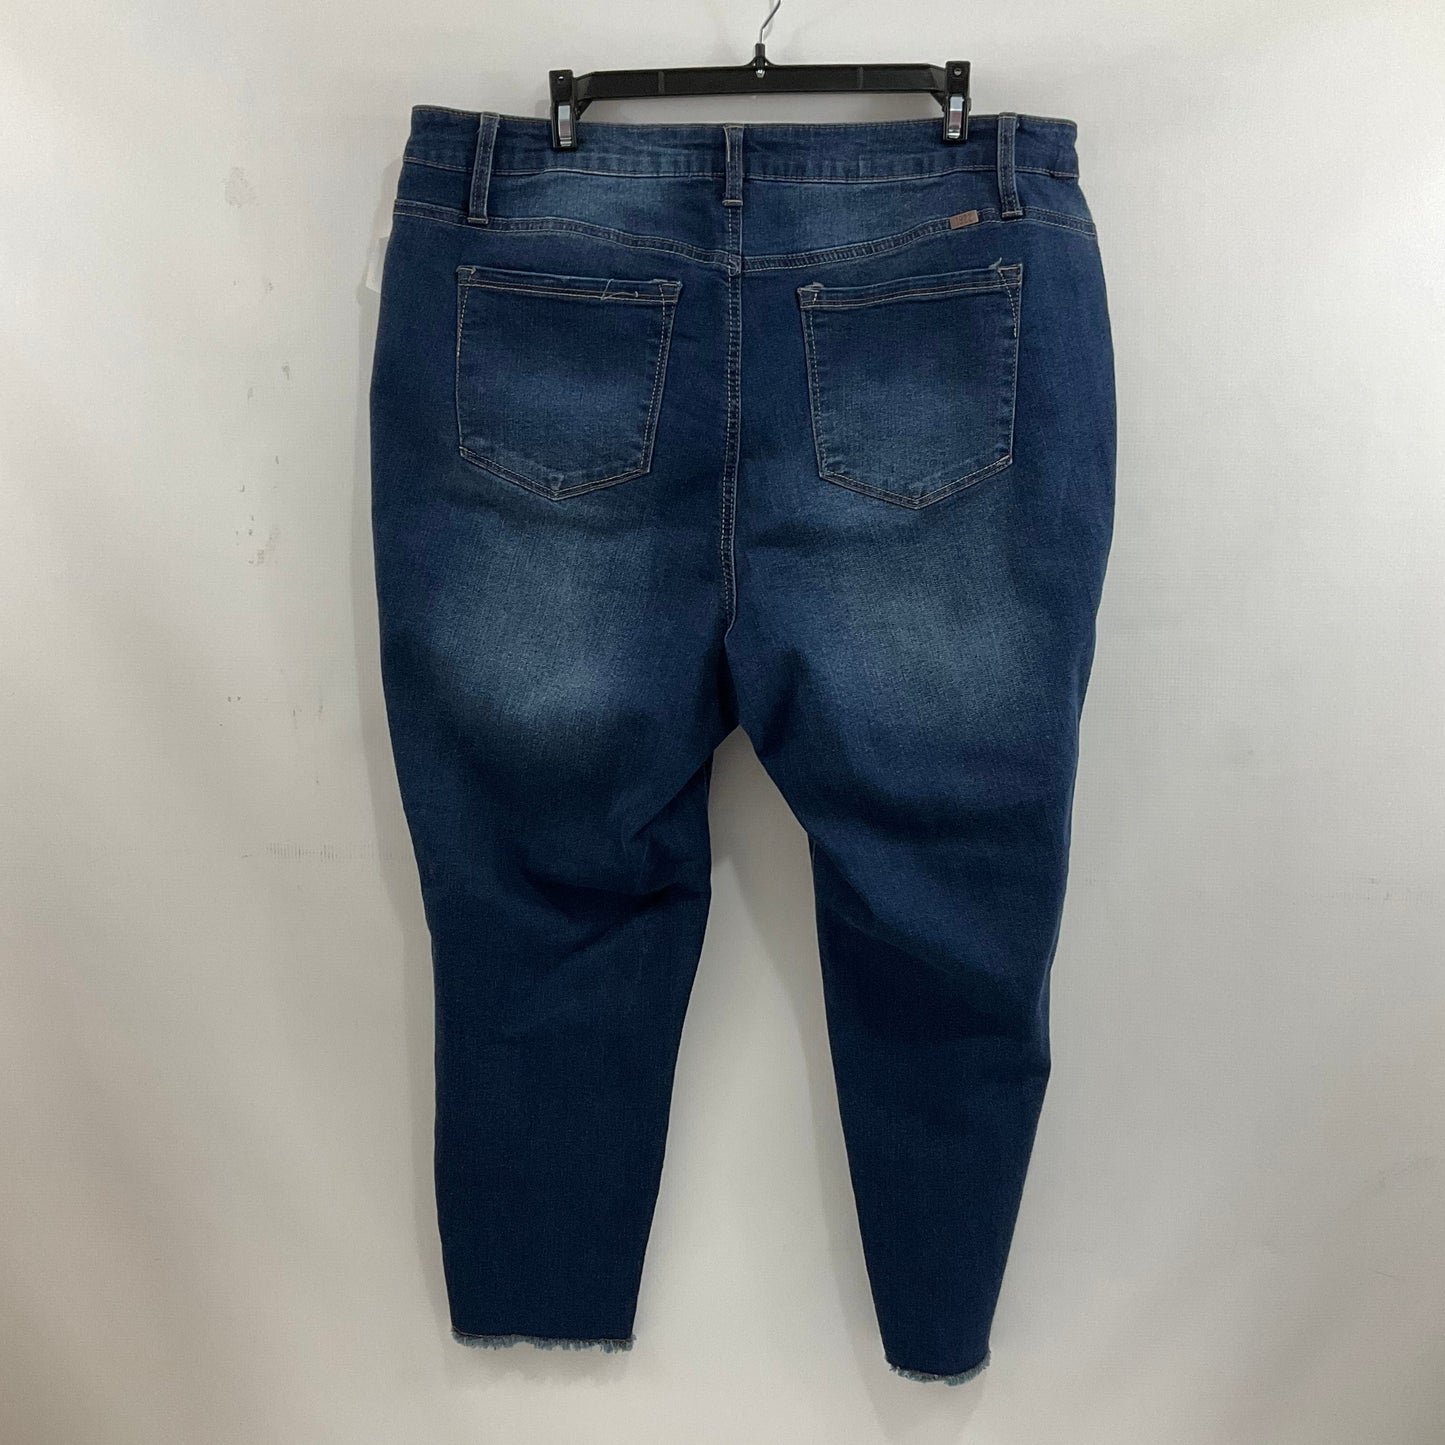 Jeans Skinny By 1822 Denim  Size: 20